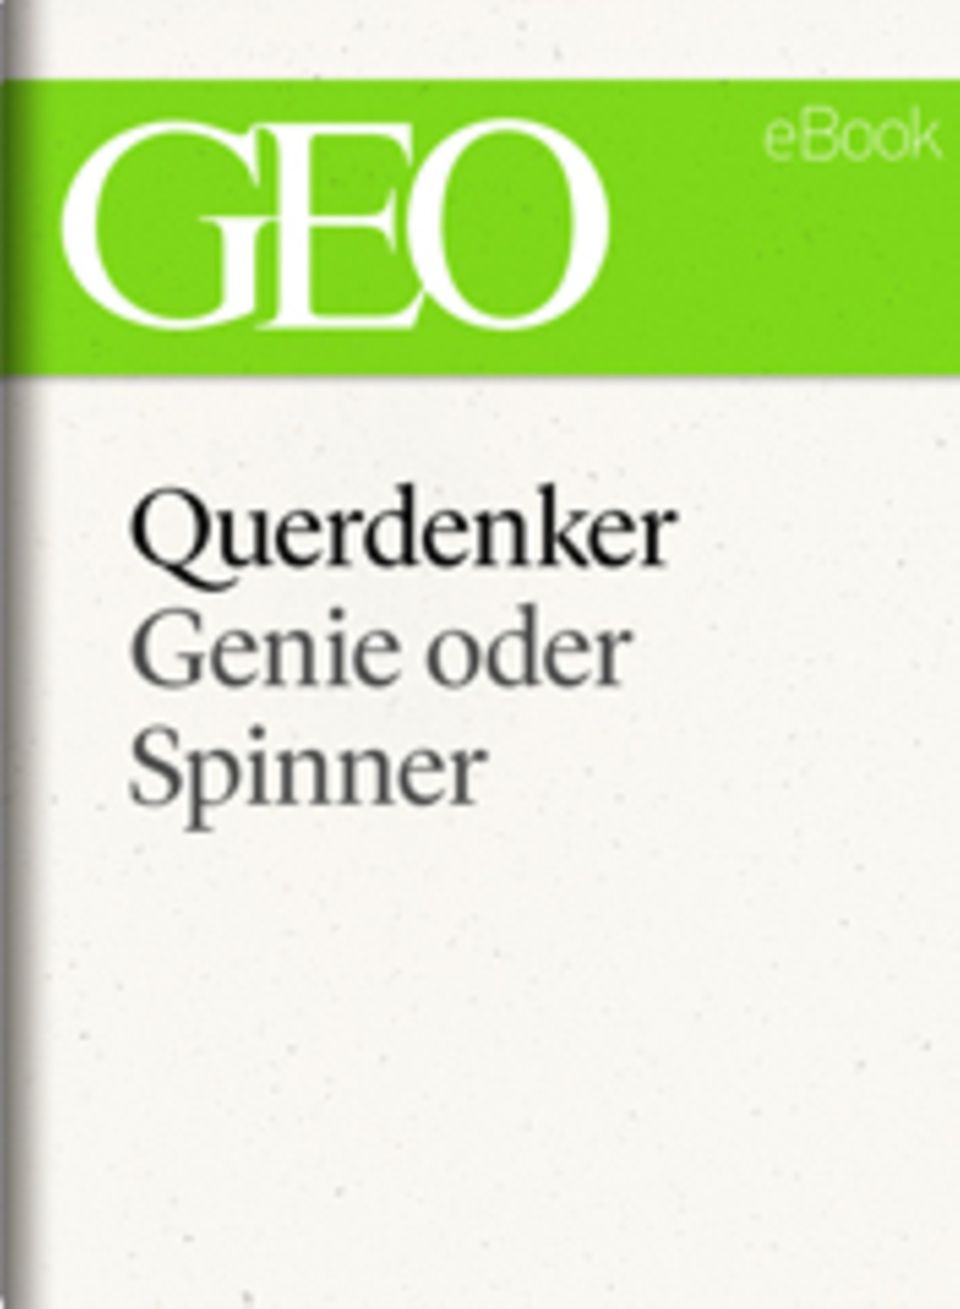 Genie oder Spinner: GEO eBook "Querdenker"